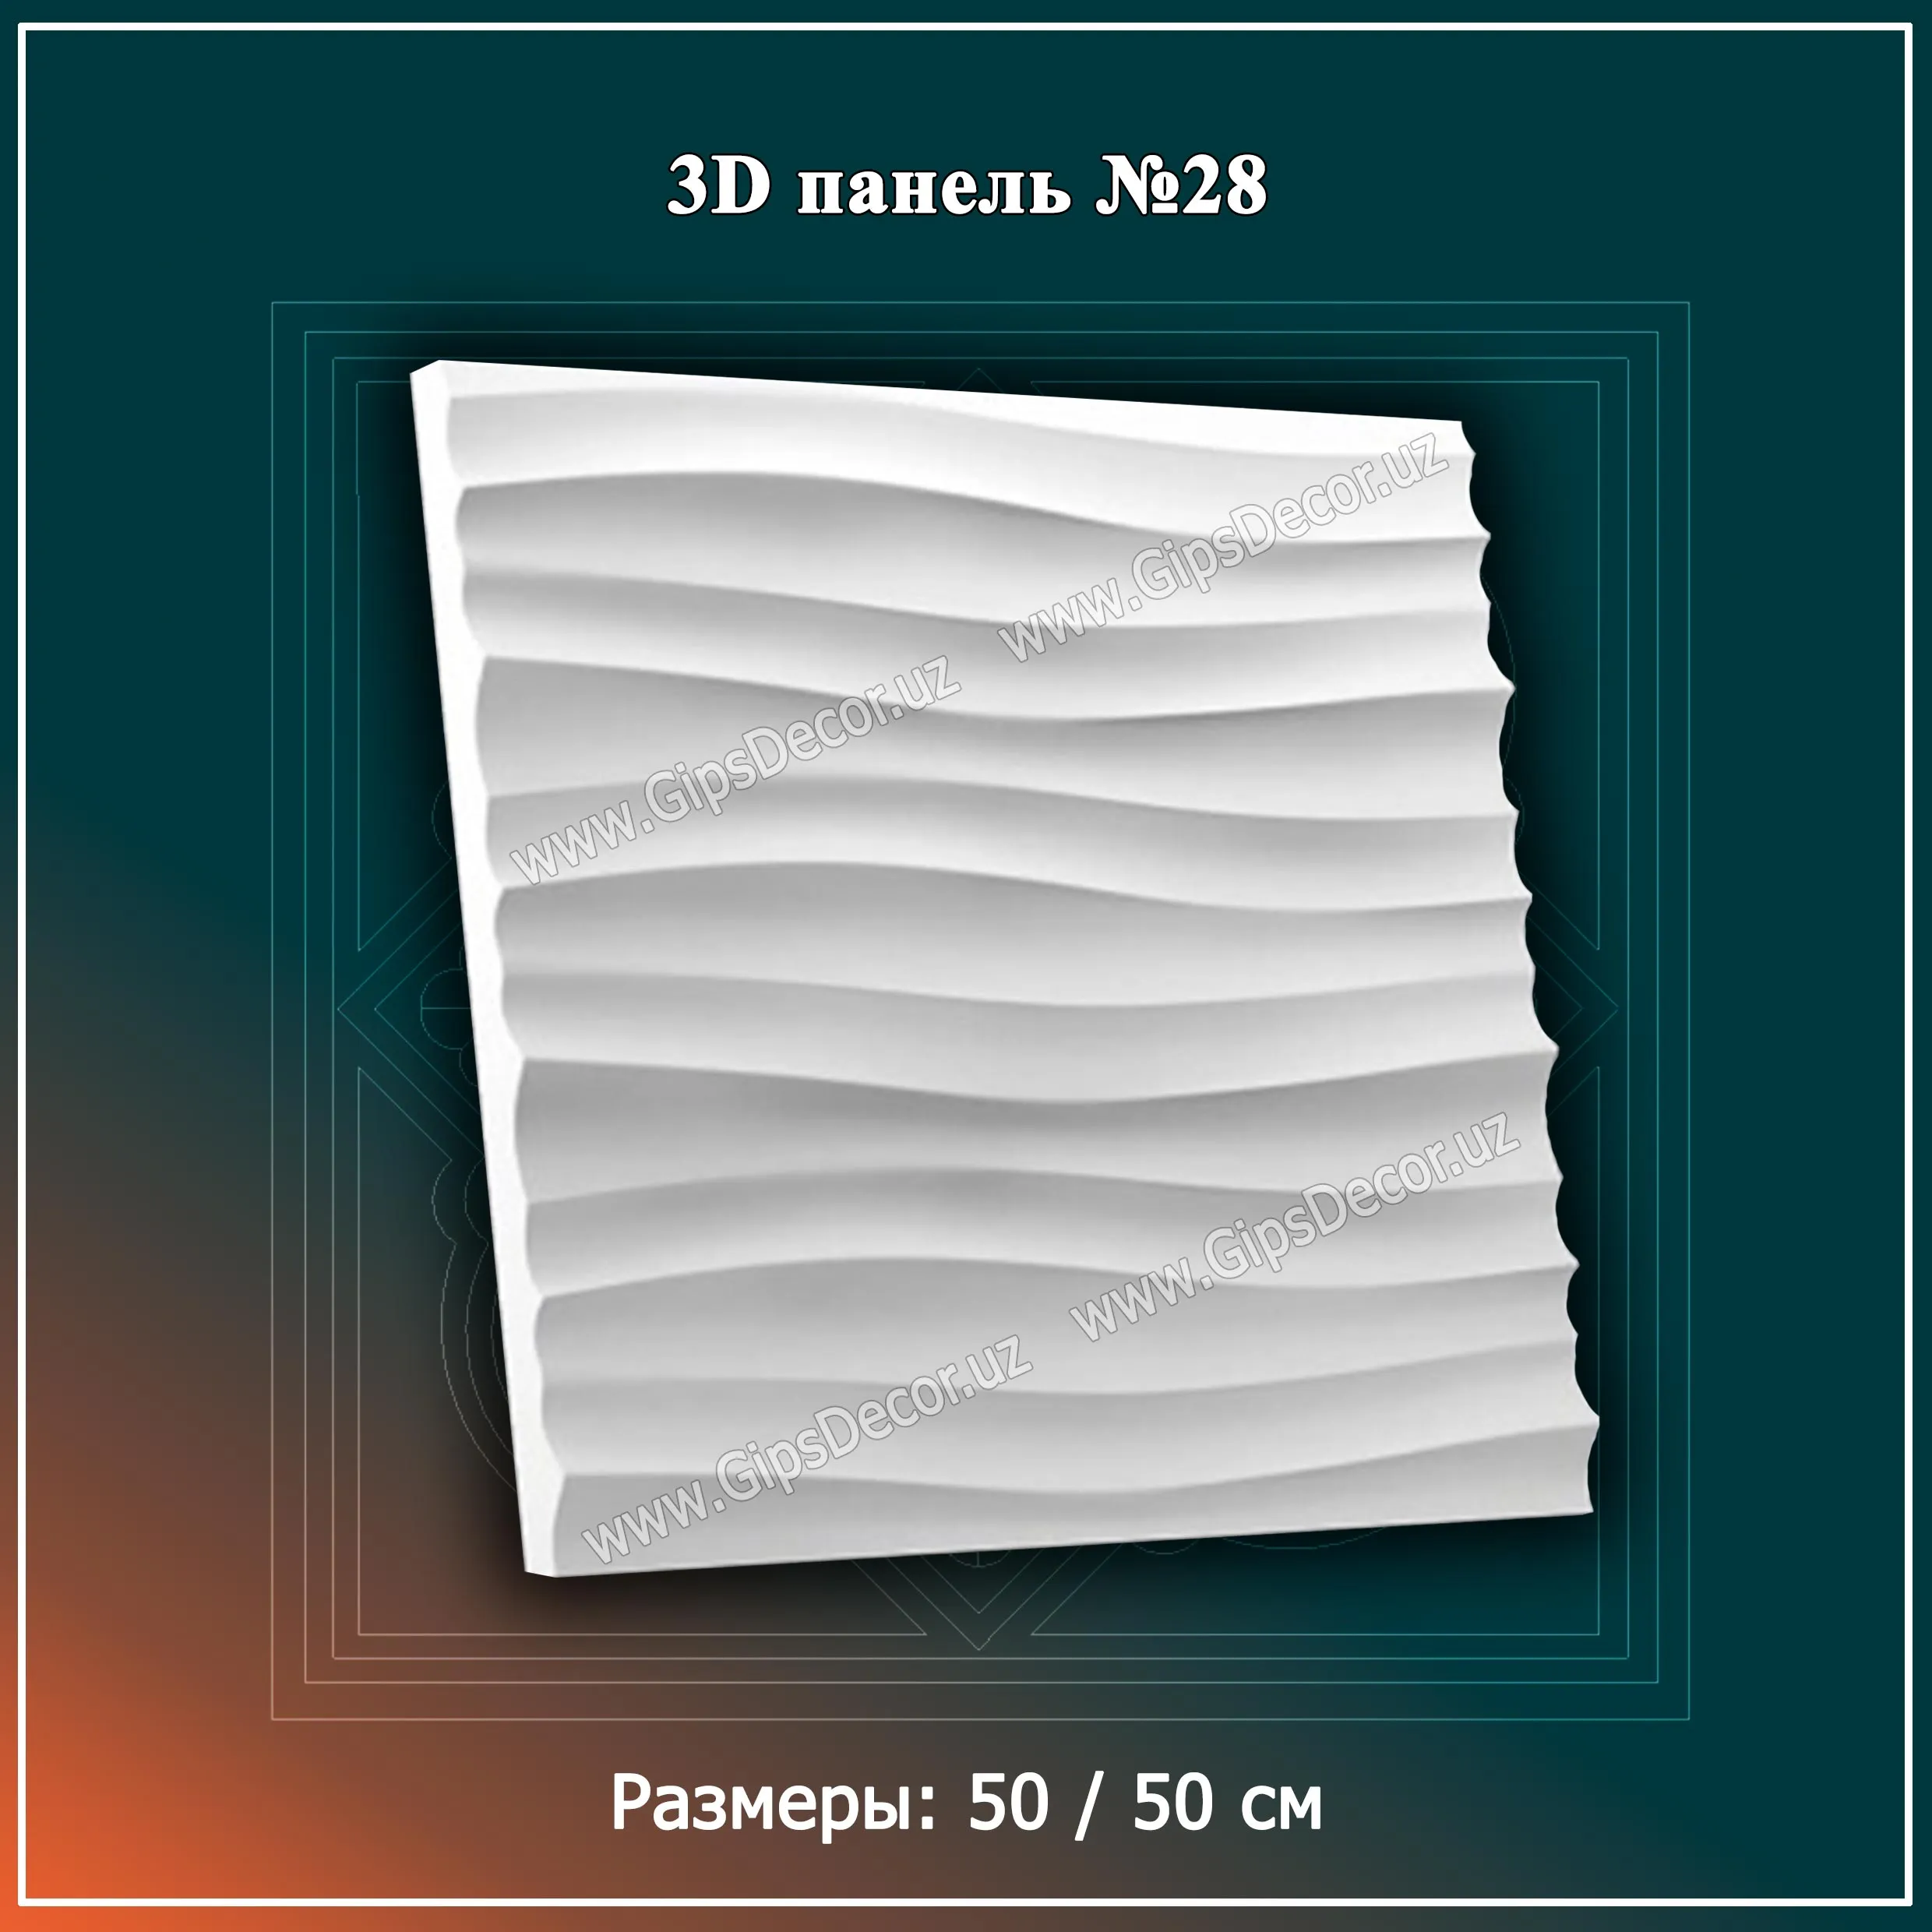 3D Панель №28 Размеры: 50 / 50 см#1